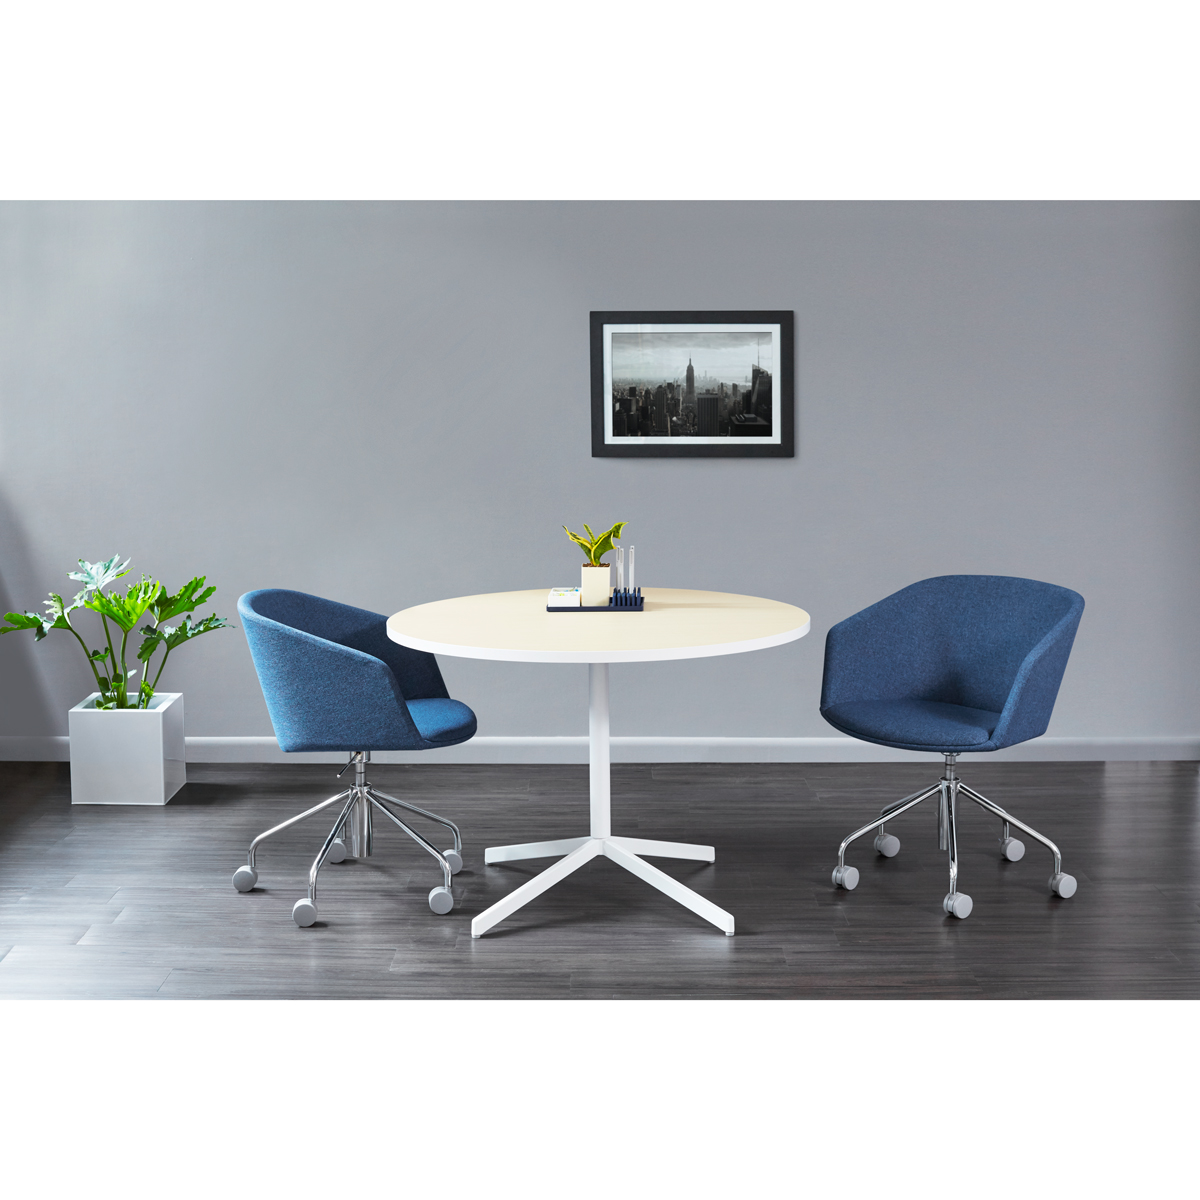 White Touchpoint Meeting Table, 42", White Legs,White,hi-res